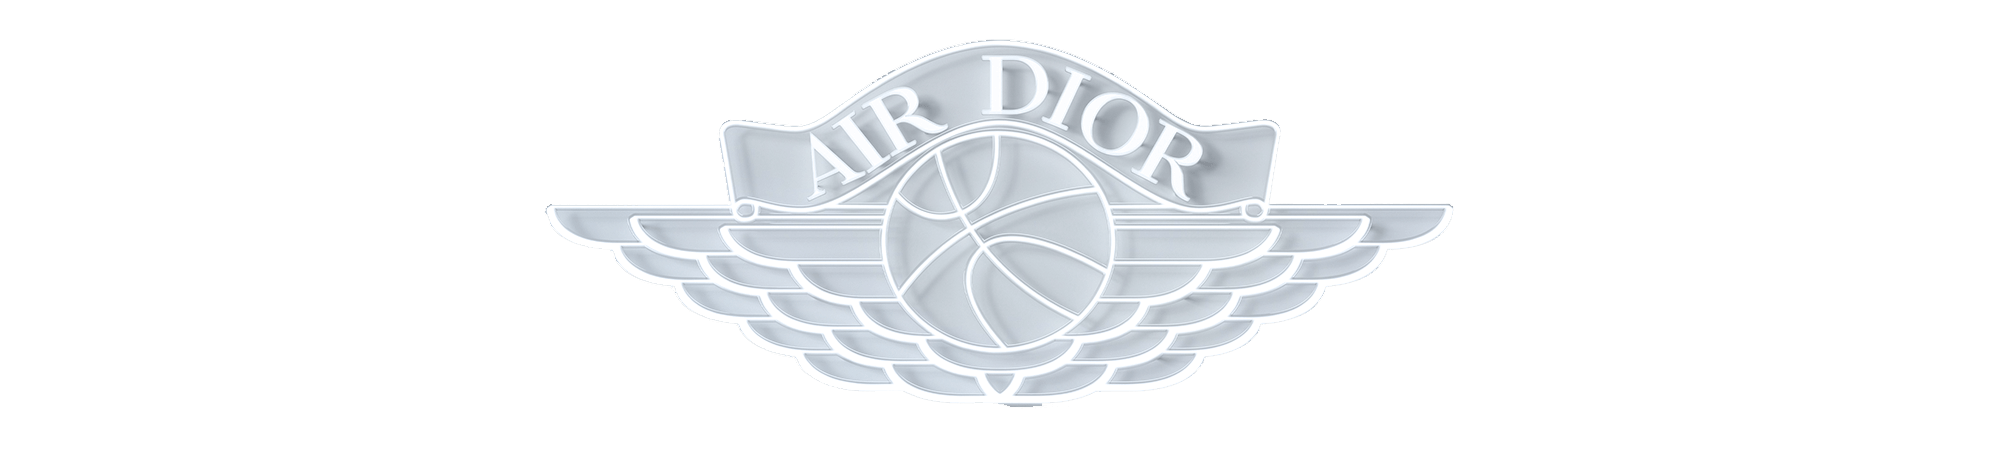 Air Dior, The Corner Shop